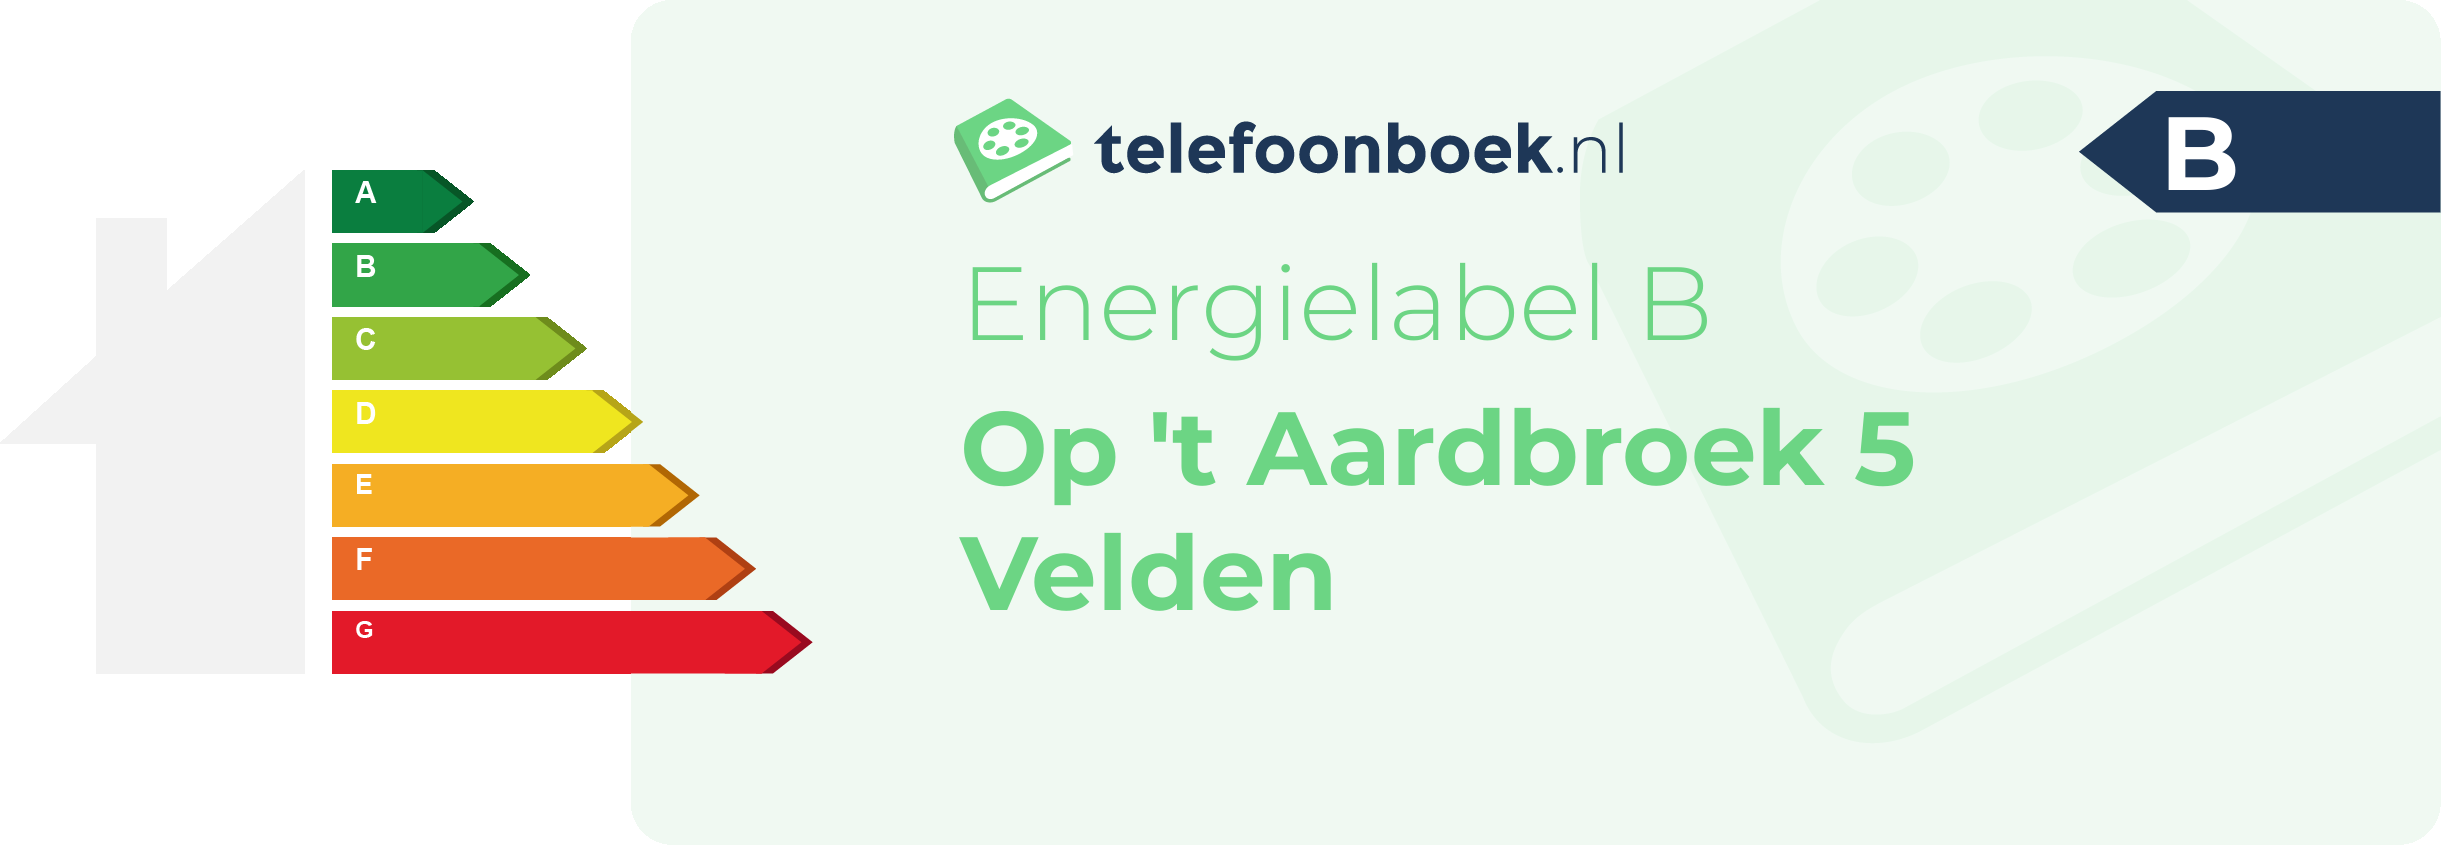 Energielabel Op 't Aardbroek 5 Velden